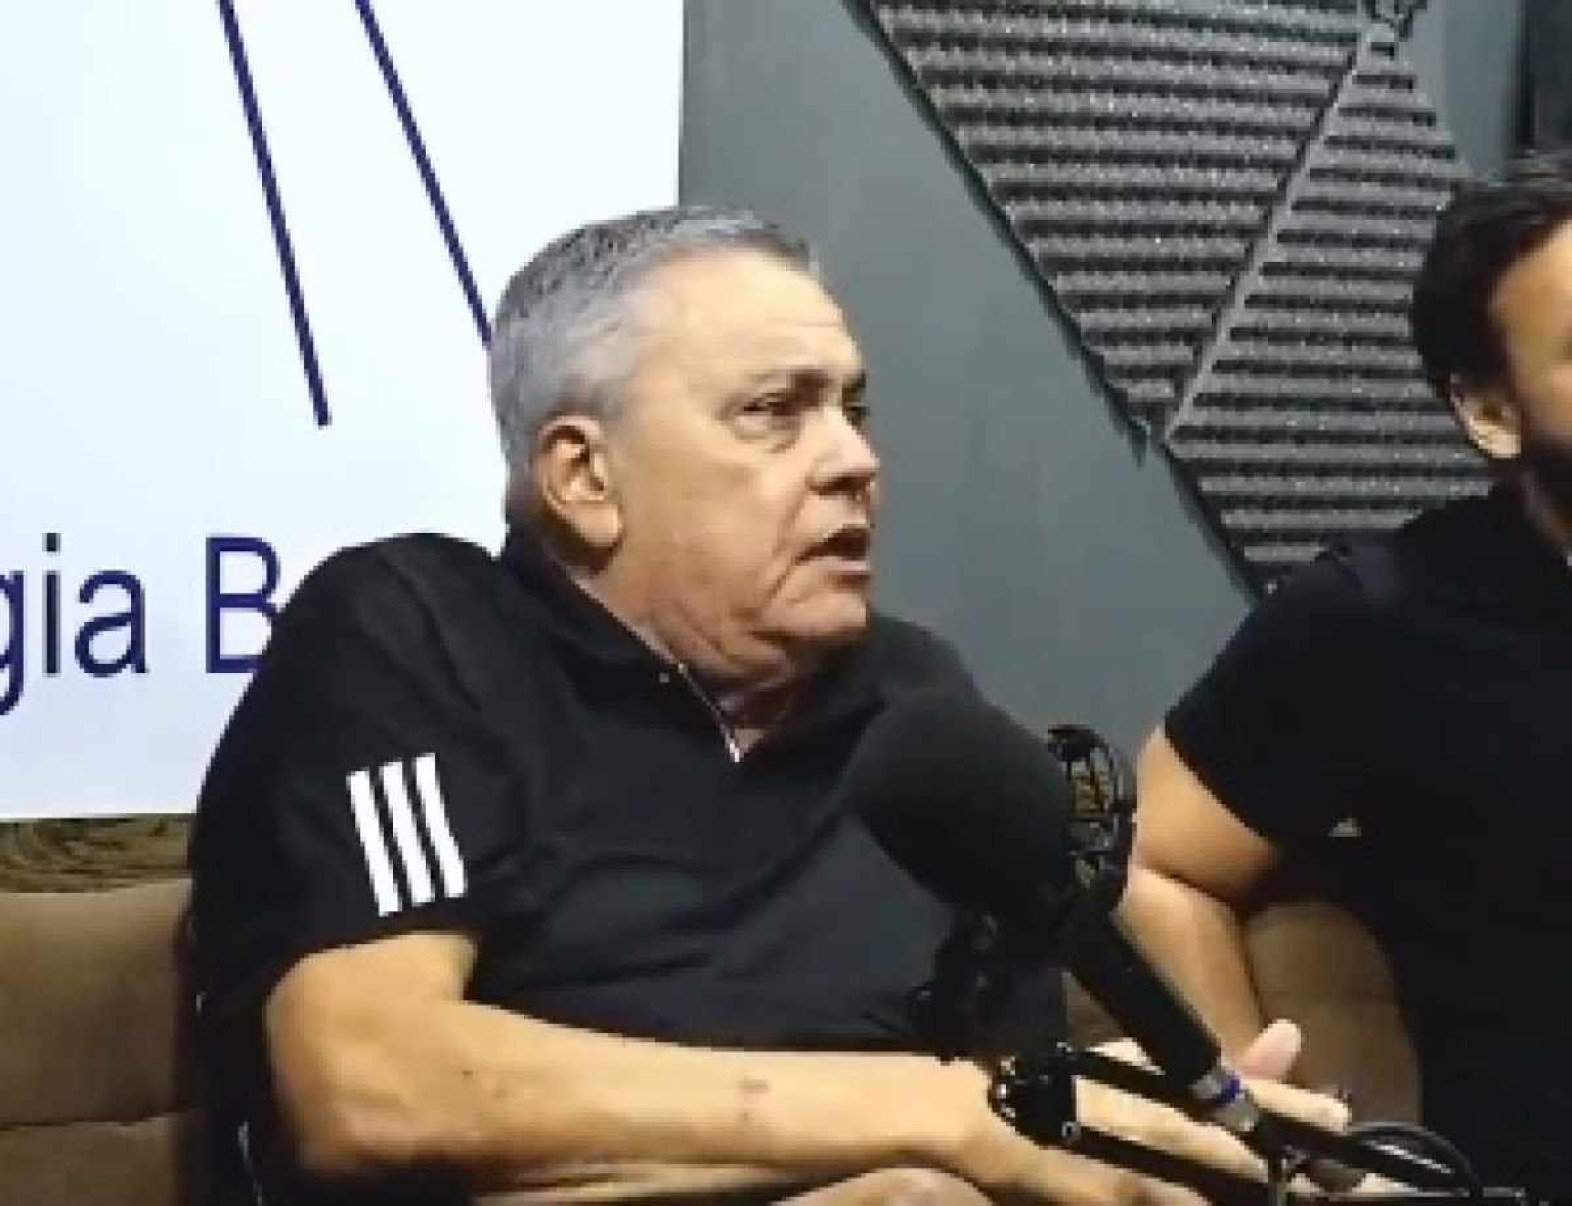 Vídeo: Ex-presidente do Vitória confessa ter comprado desembargador do RJ